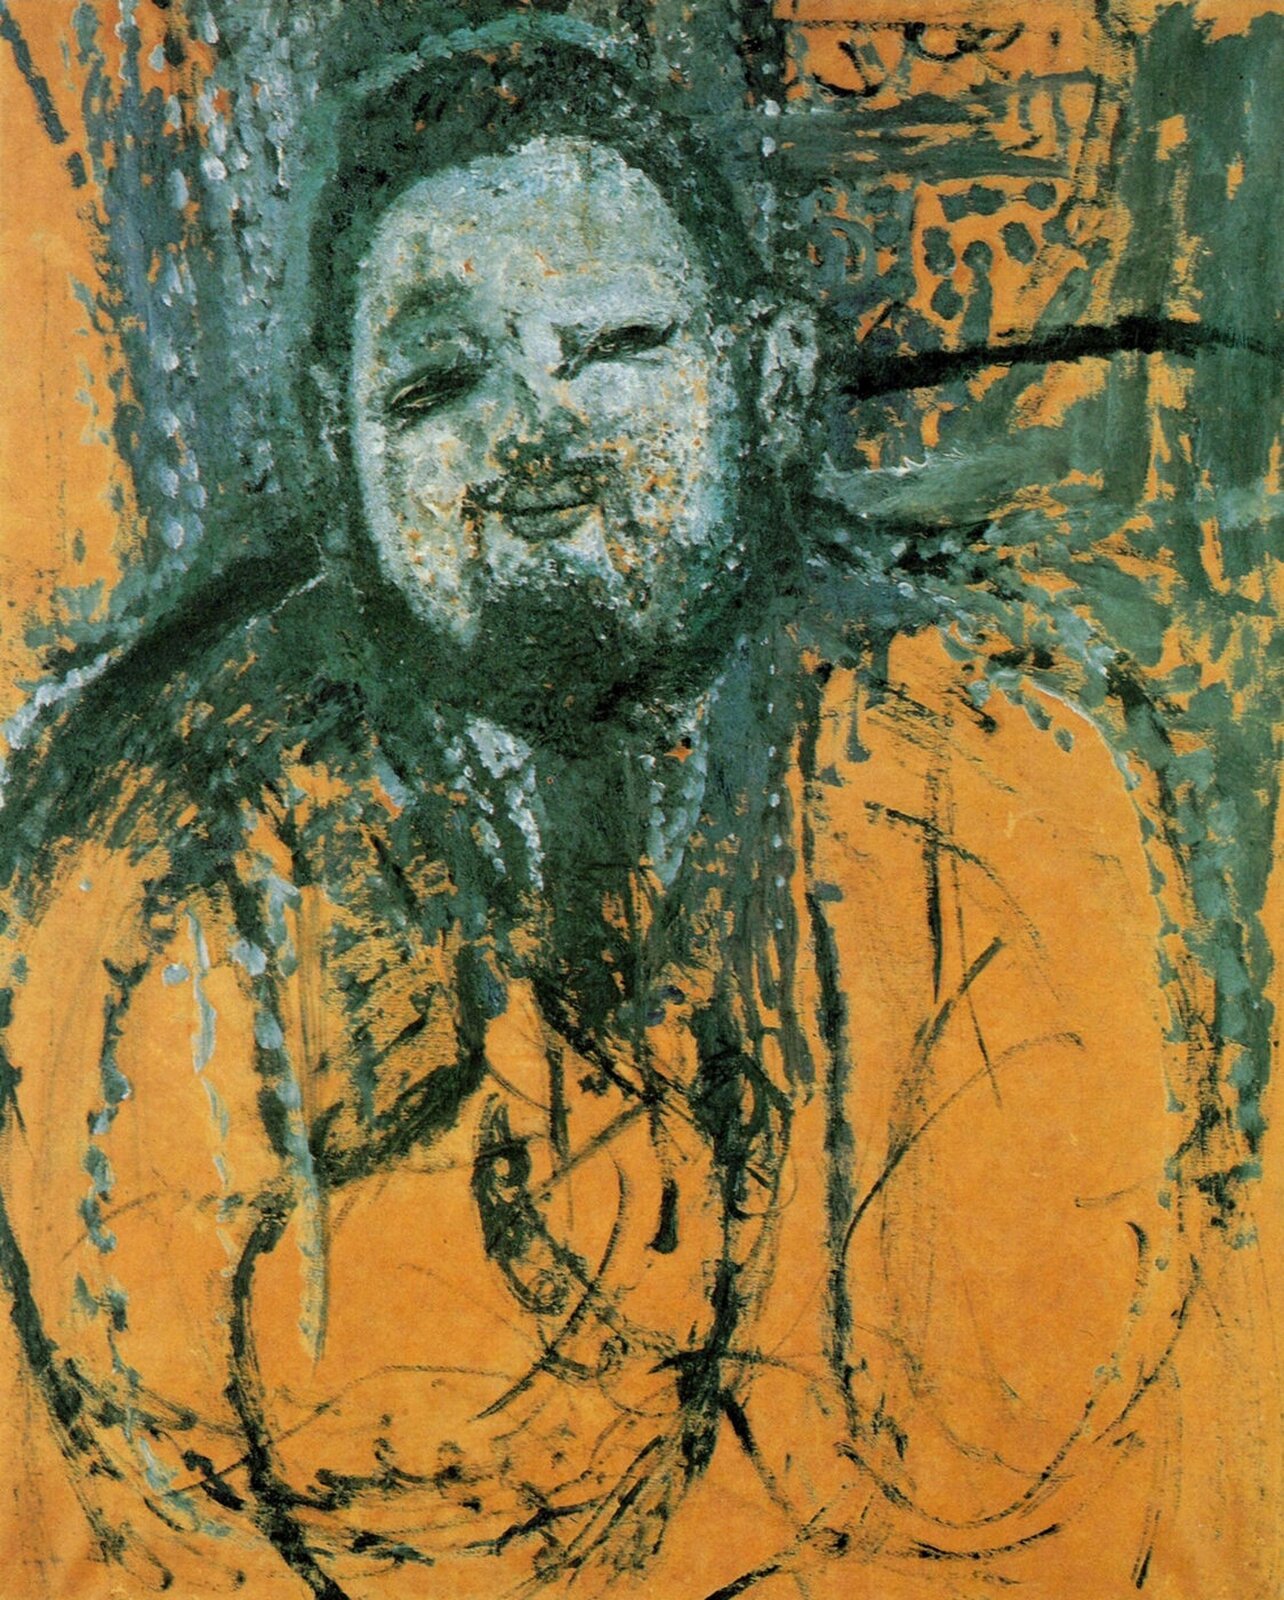 lustracja przedstawia obraz Amedeo Modigliani pt. „Głowa kobiety”. Obraz ukazuje rzeźbę głowy kobiety z krótkimi włosami. Ma długą twarz i nos oraz zamknięte oczy. Artysta wyrzeźbił bardzo długą szyję, która jest specyficzna dla Modigliana.